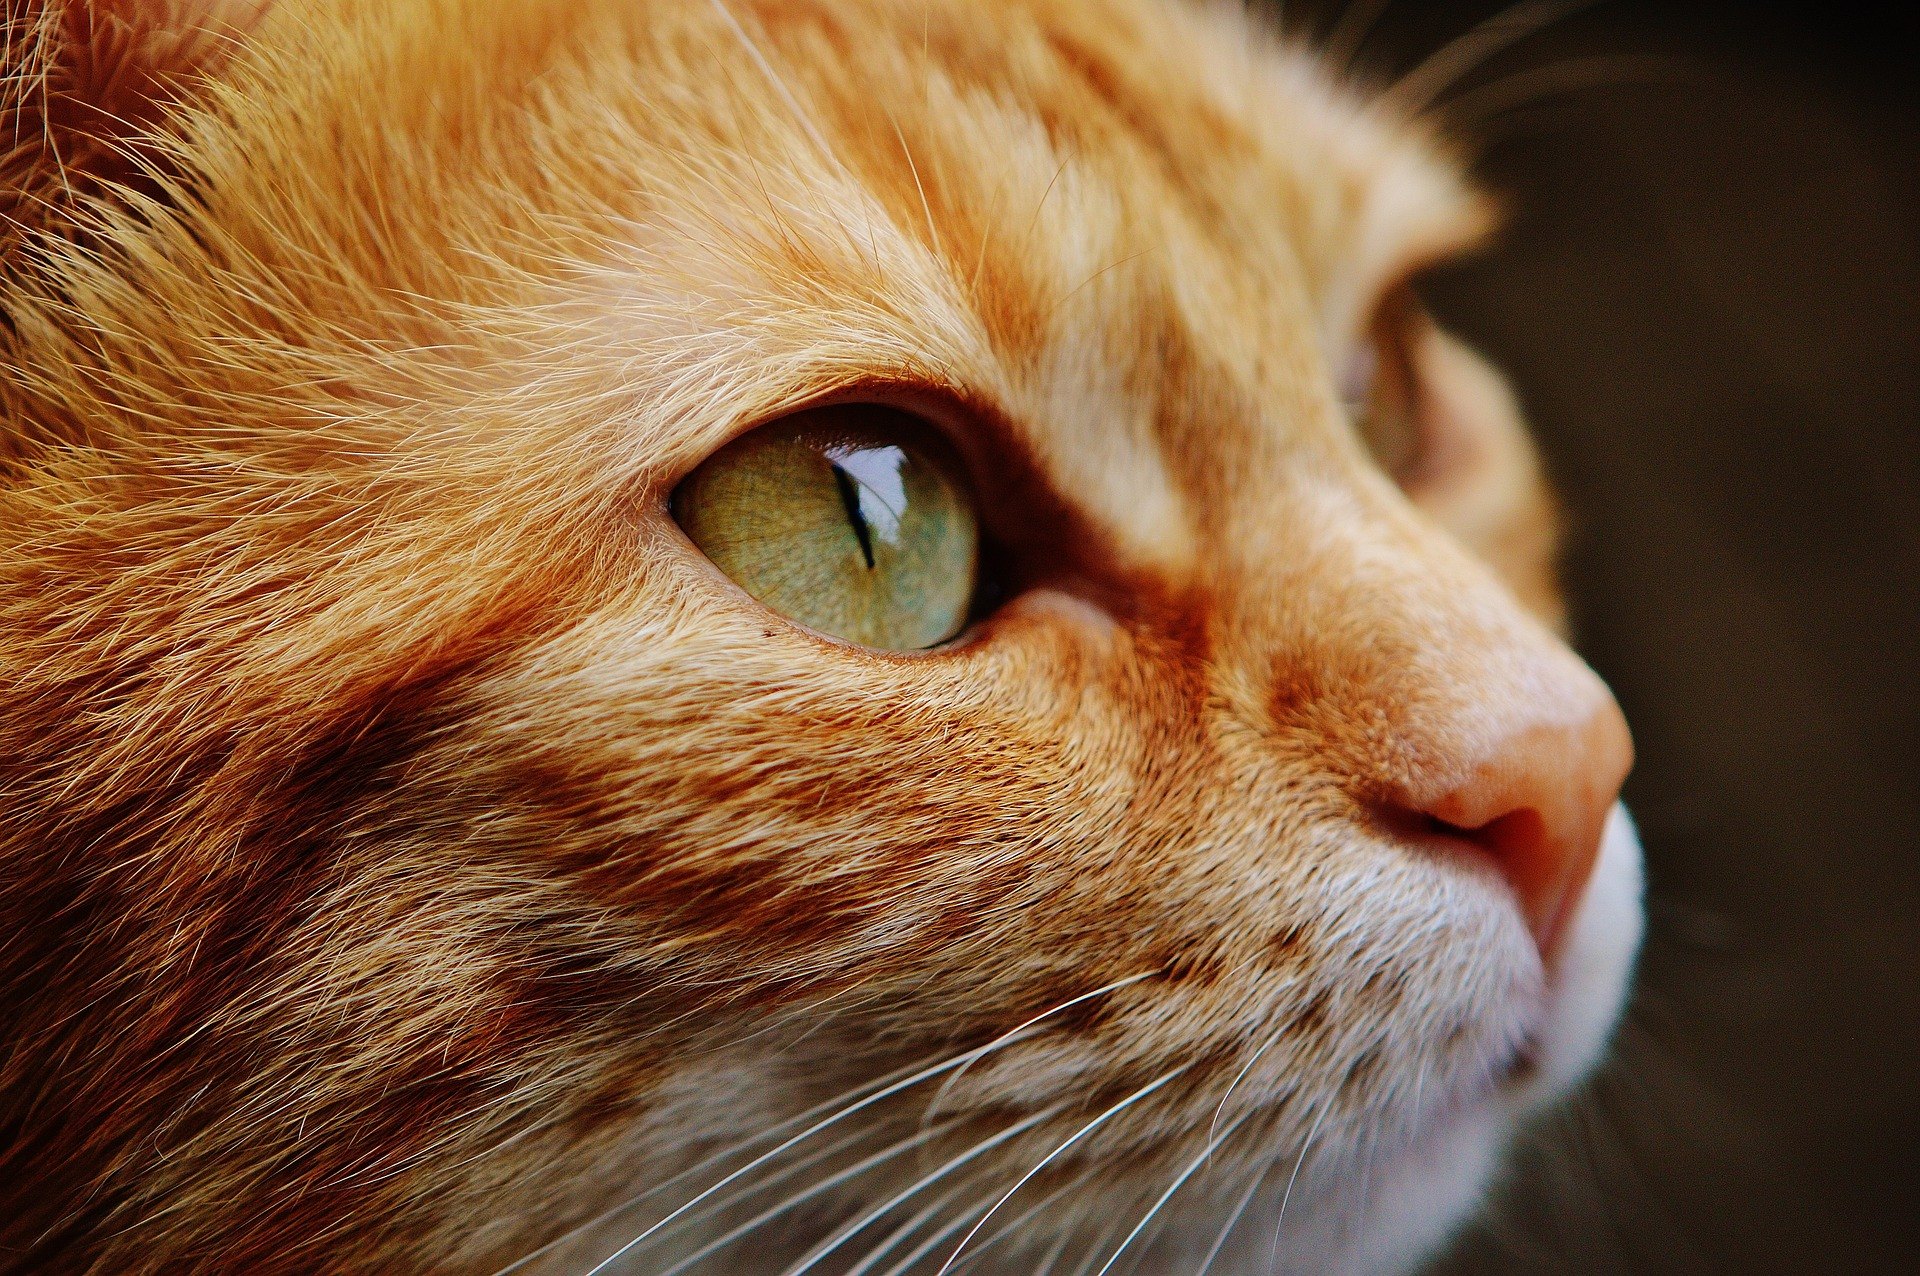 Les yeux des chats ont une structure assez développée, très différente de l'anatomie de l'œil humain.